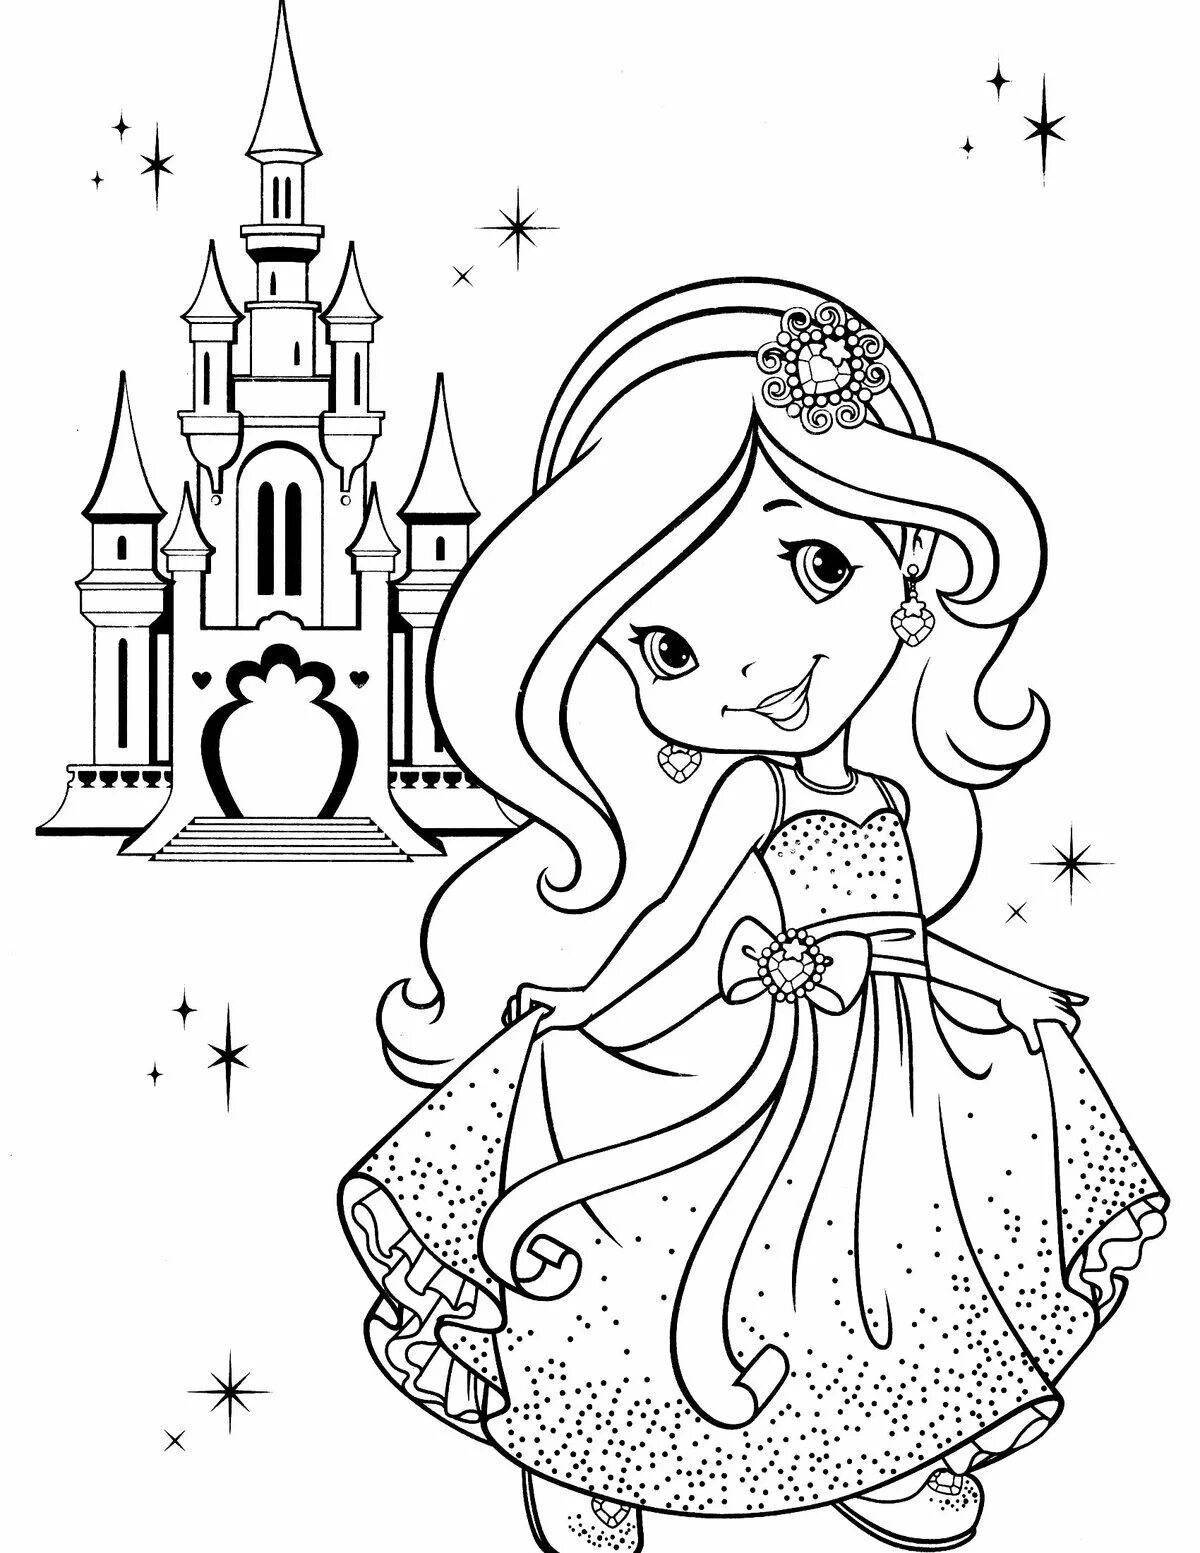 Ethereal coloring drawing princess